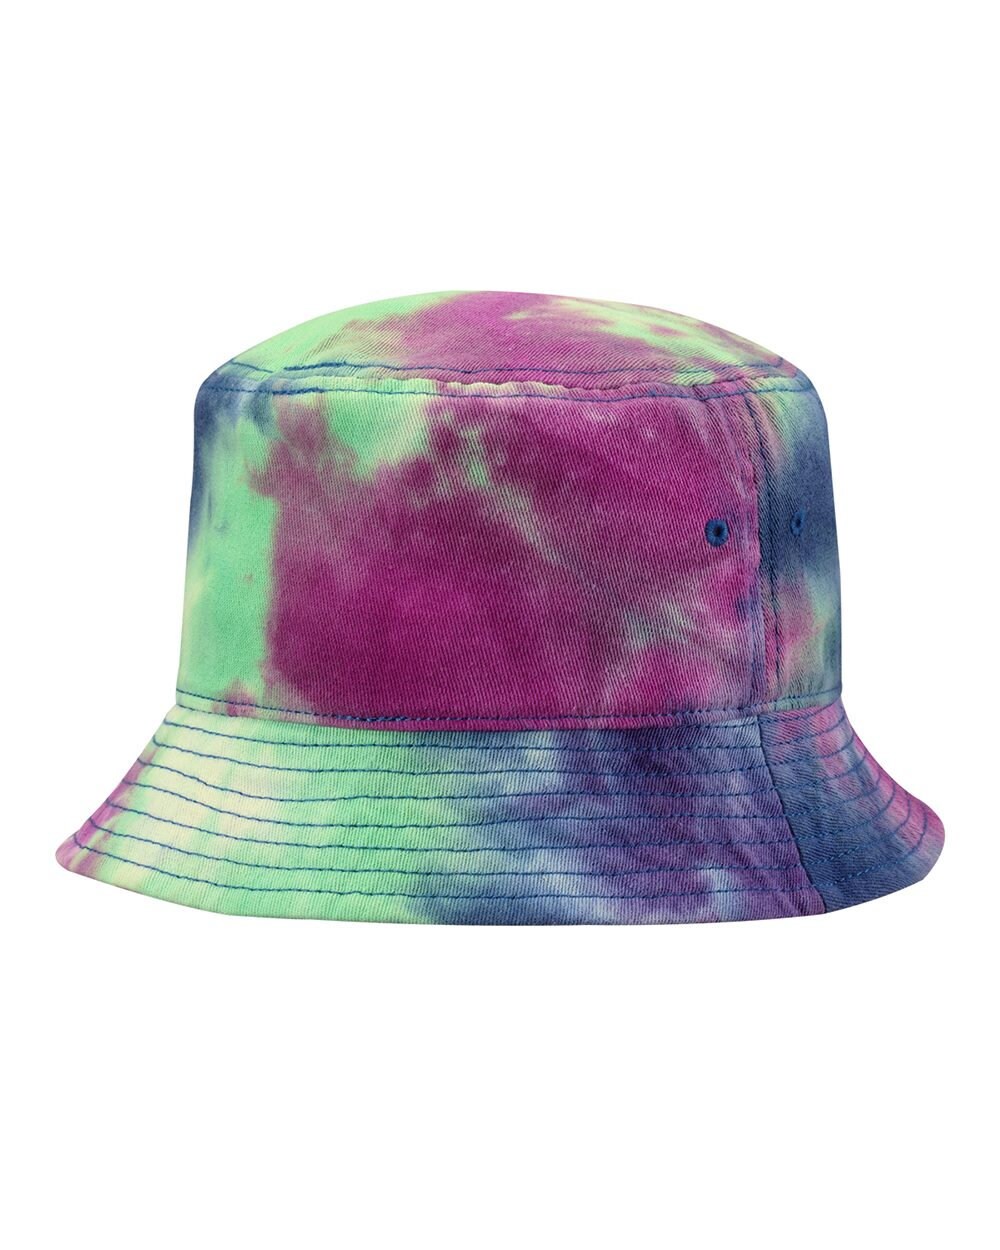 Tie-Dye Bucket Hat Custom Tie-Dye Bucket Hat Summer | Etsy